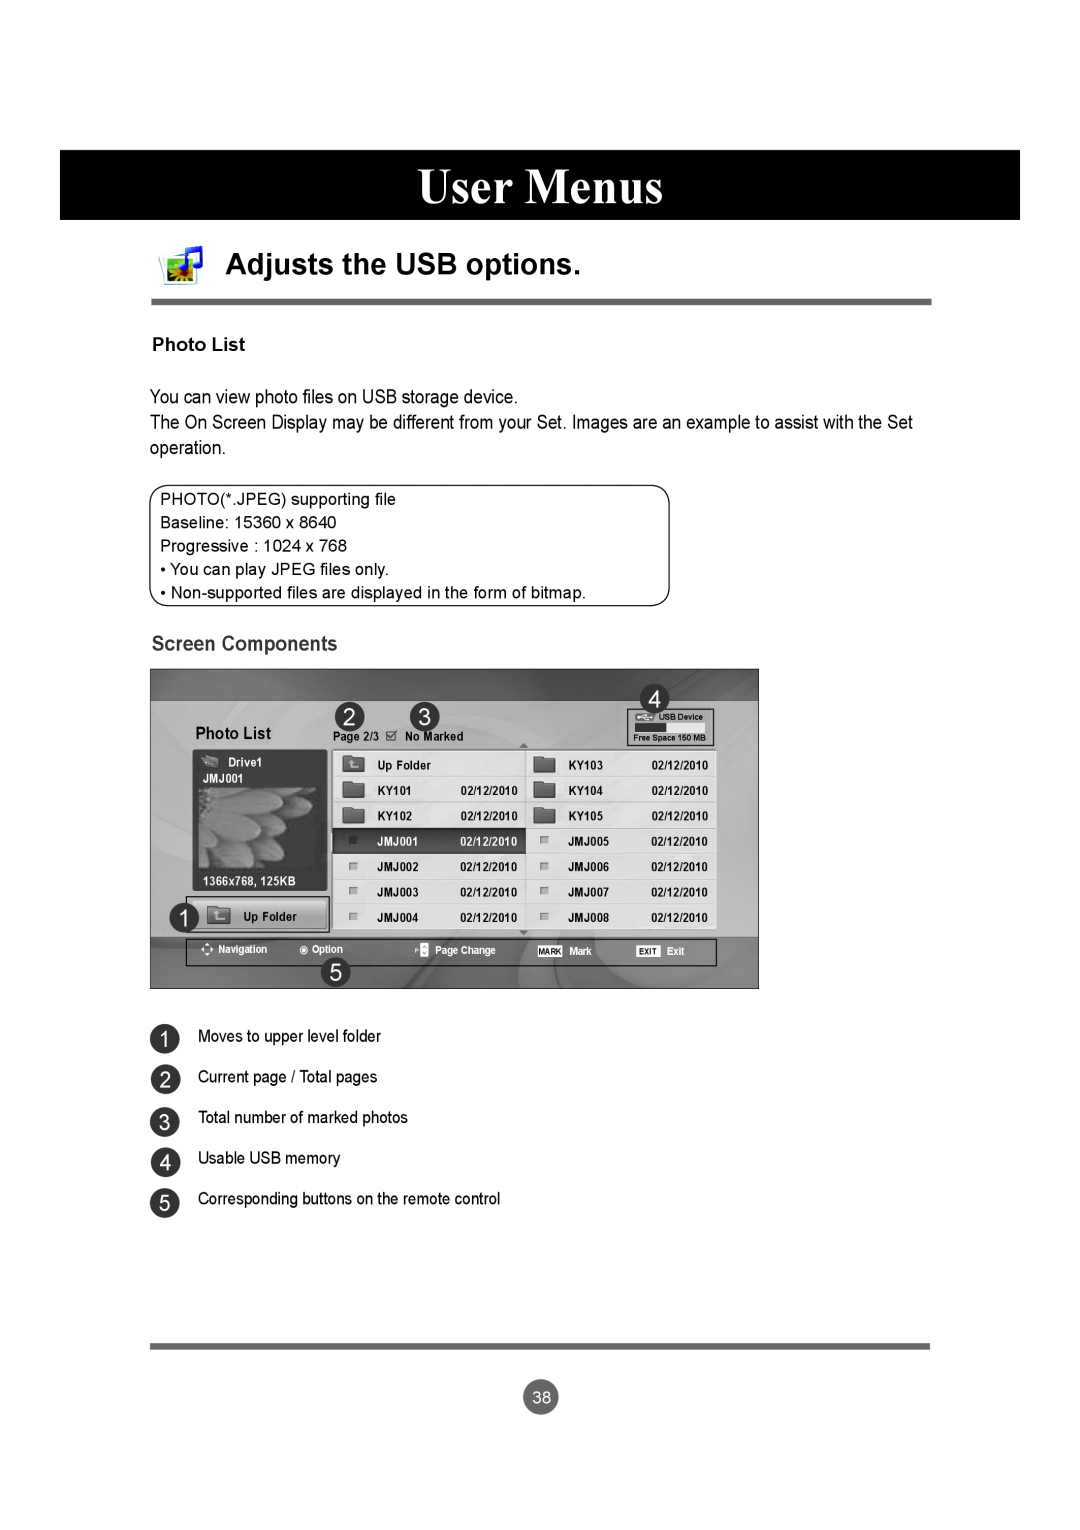 LG Electronics M4720C, M5520C owner manual User Menus, Adjusts the USB options, Screen Components, Photo List 